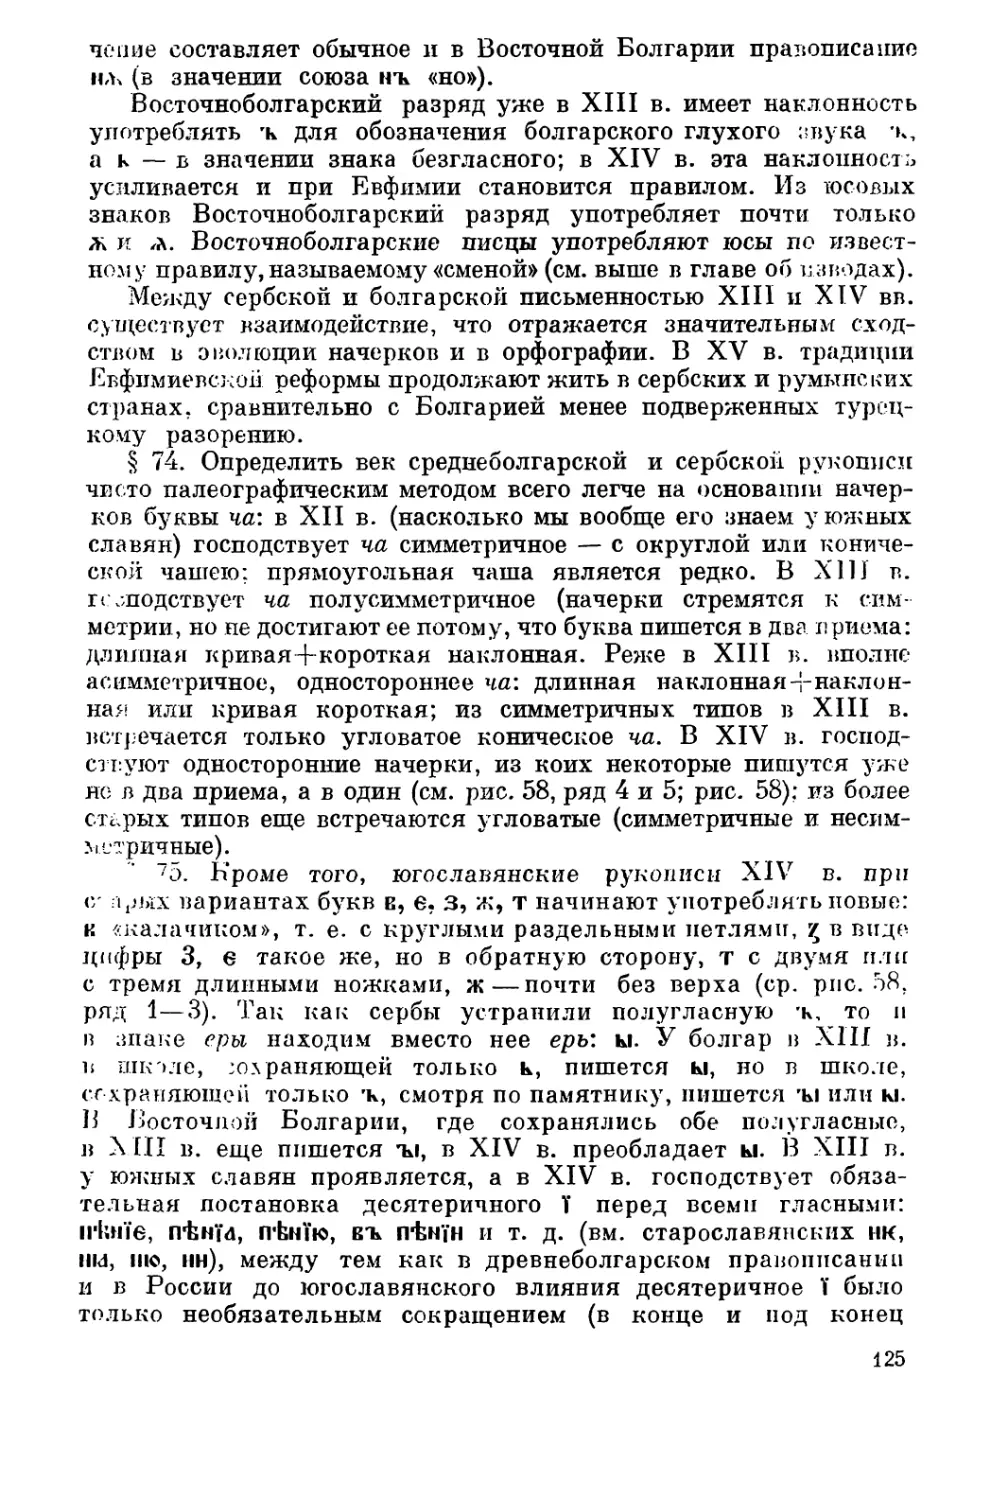 Определение века югославянских рукописей по графике и орфографии